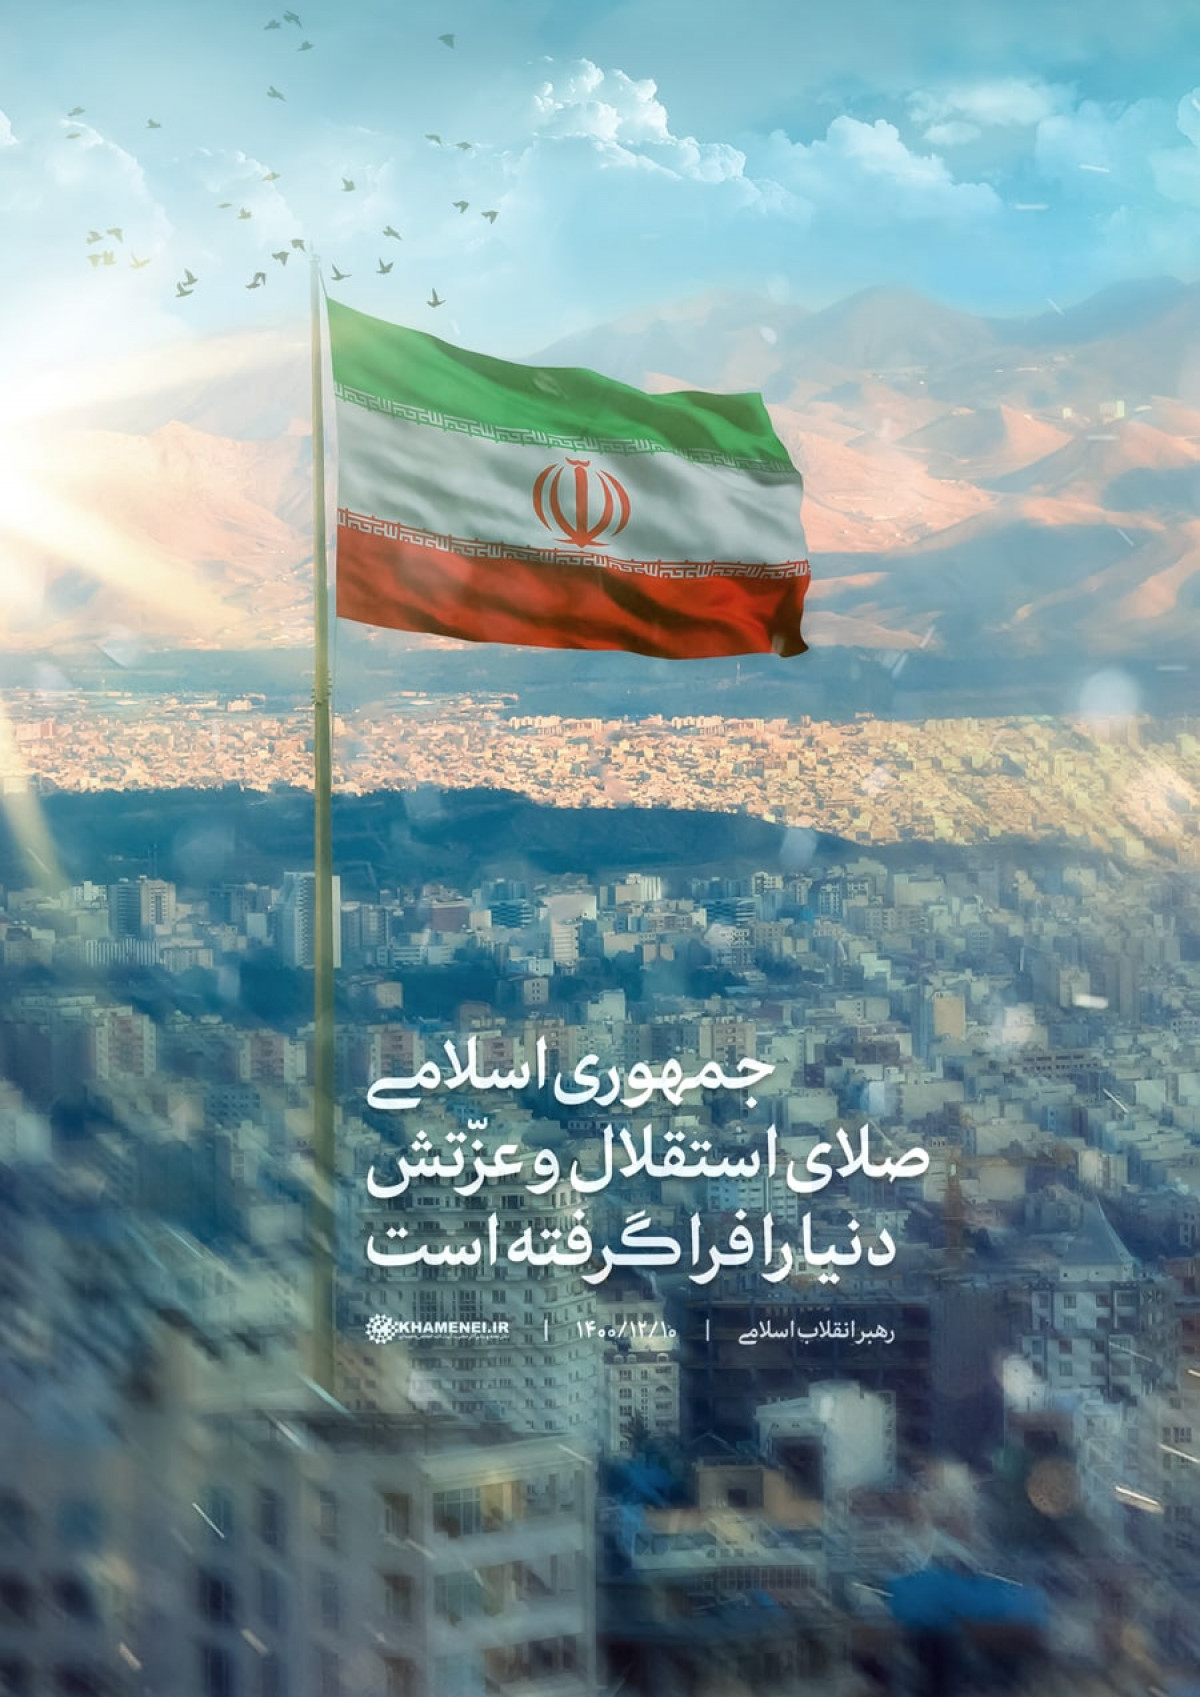 جمهوری اسلامی صدای استقلال وعزتش دنیا را فرا گرفته است